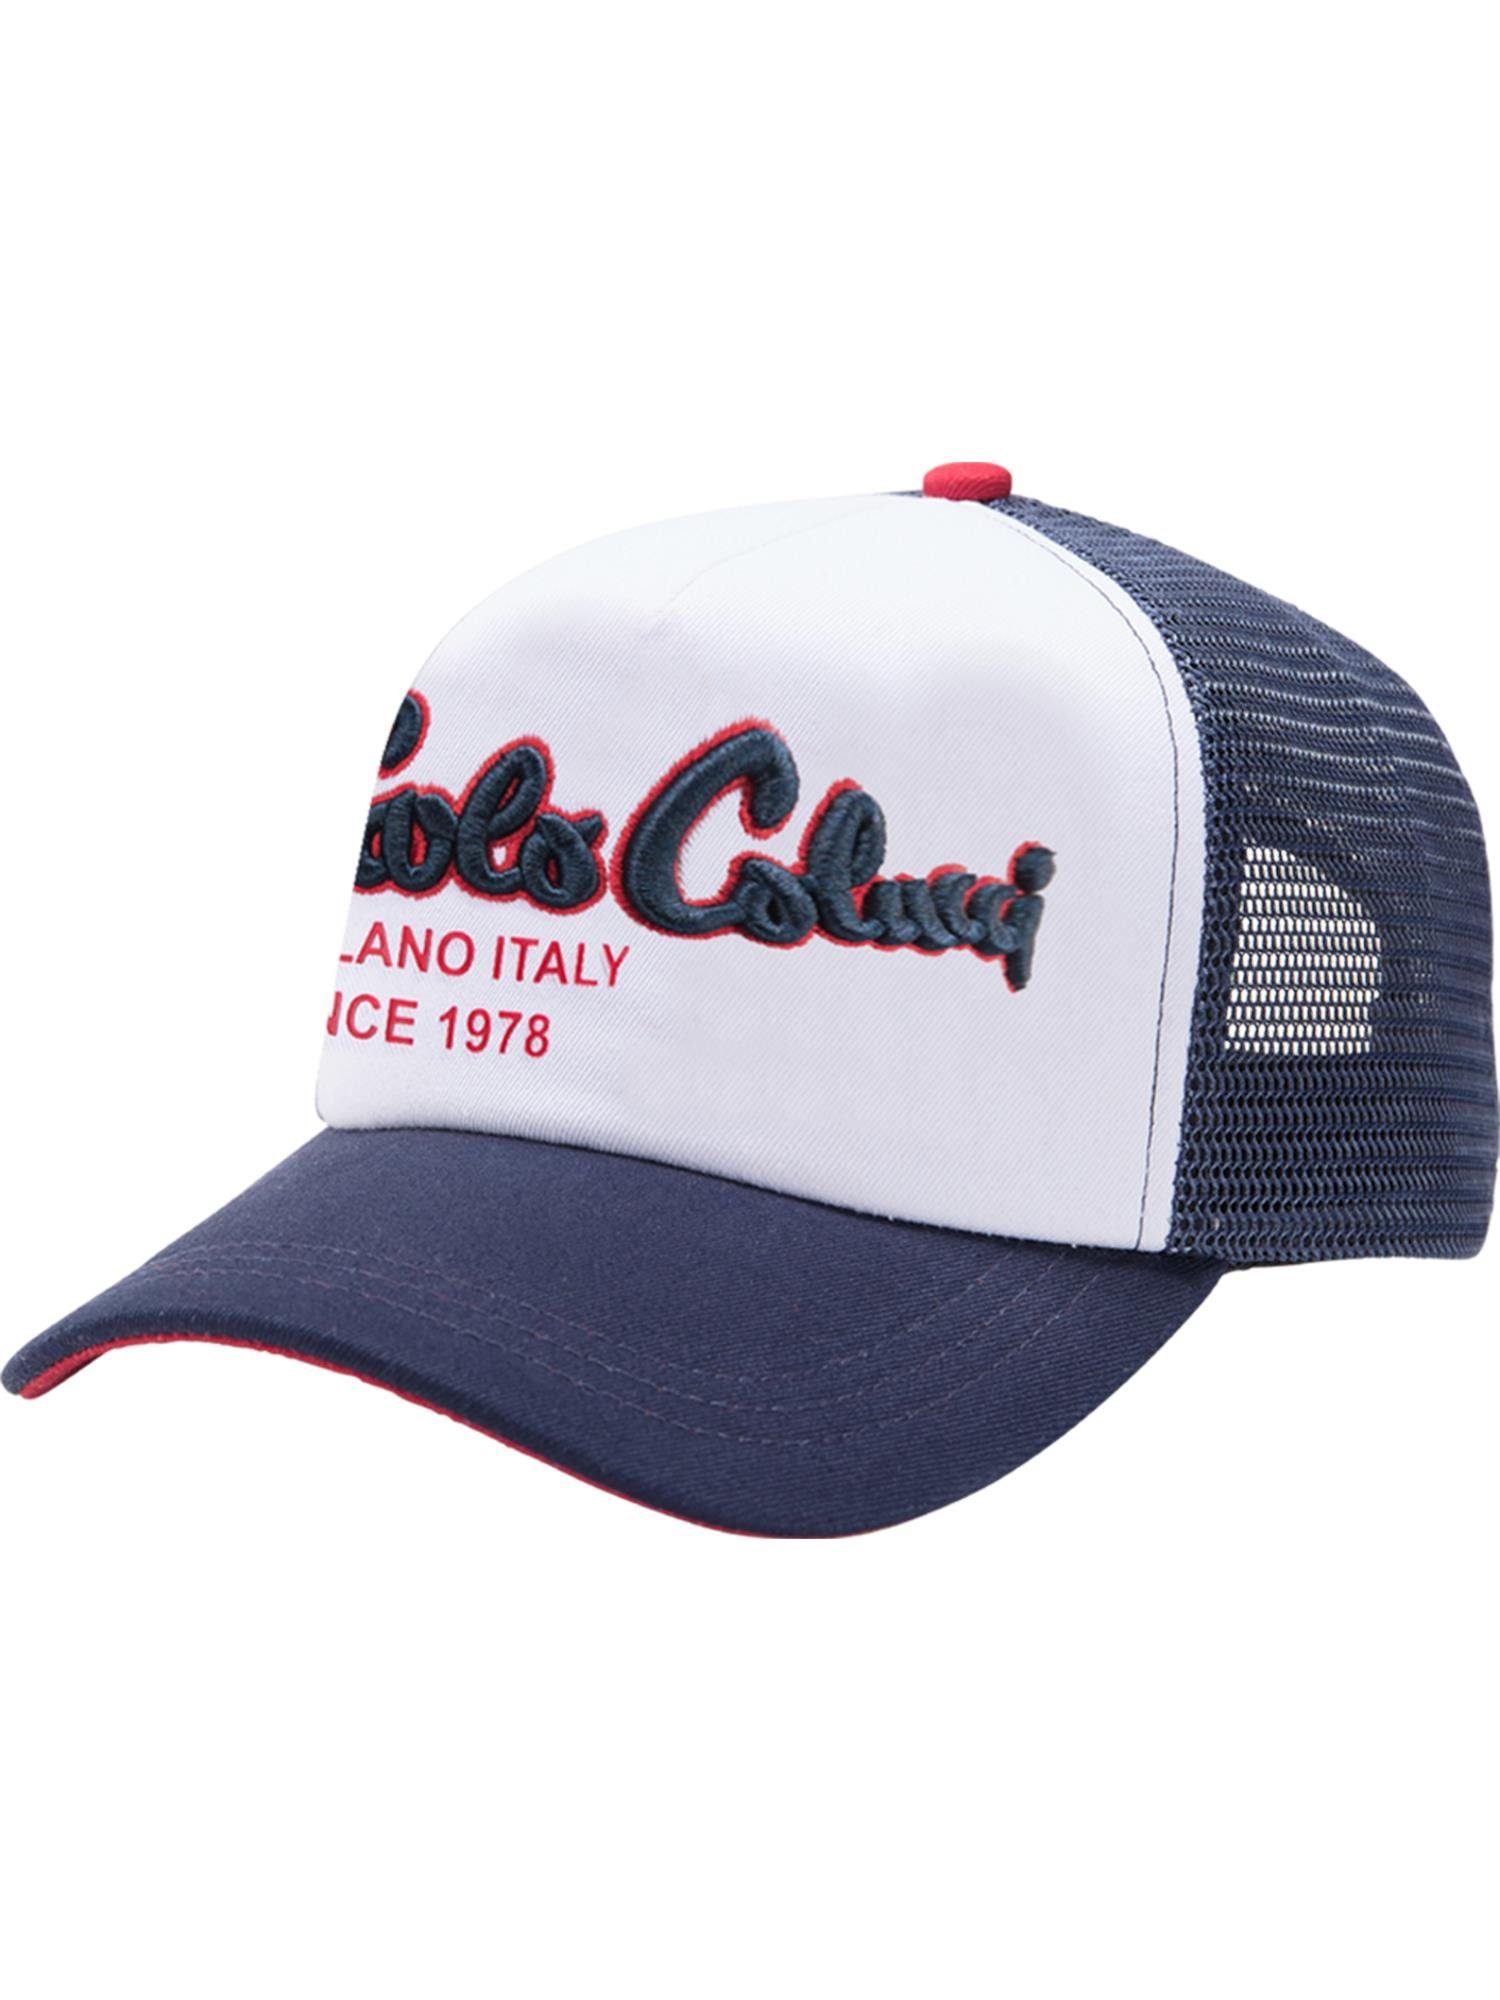 meistverkauft CARLO COLUCCI Baseball Comberlato Cap